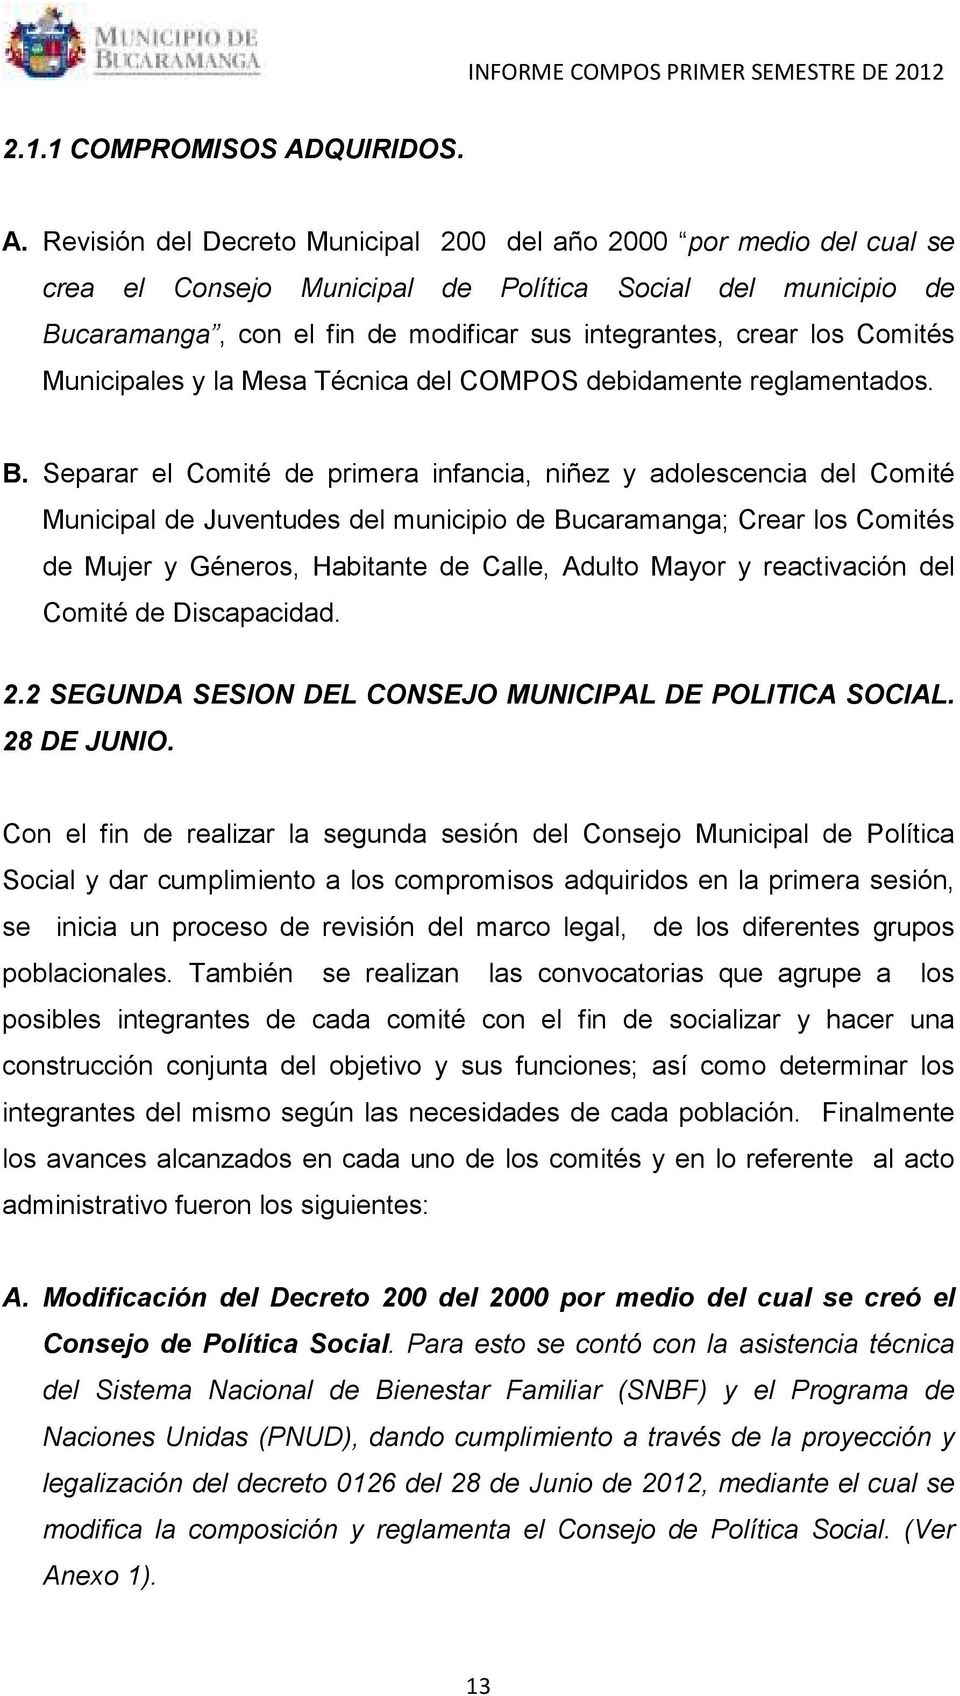 Revisión del Decreto Municipal 200 del año 2000 por medio del cual se crea el Consejo Municipal de Política Social del municipio de Bucaramanga, con el fin de modificar sus integrantes, crear los